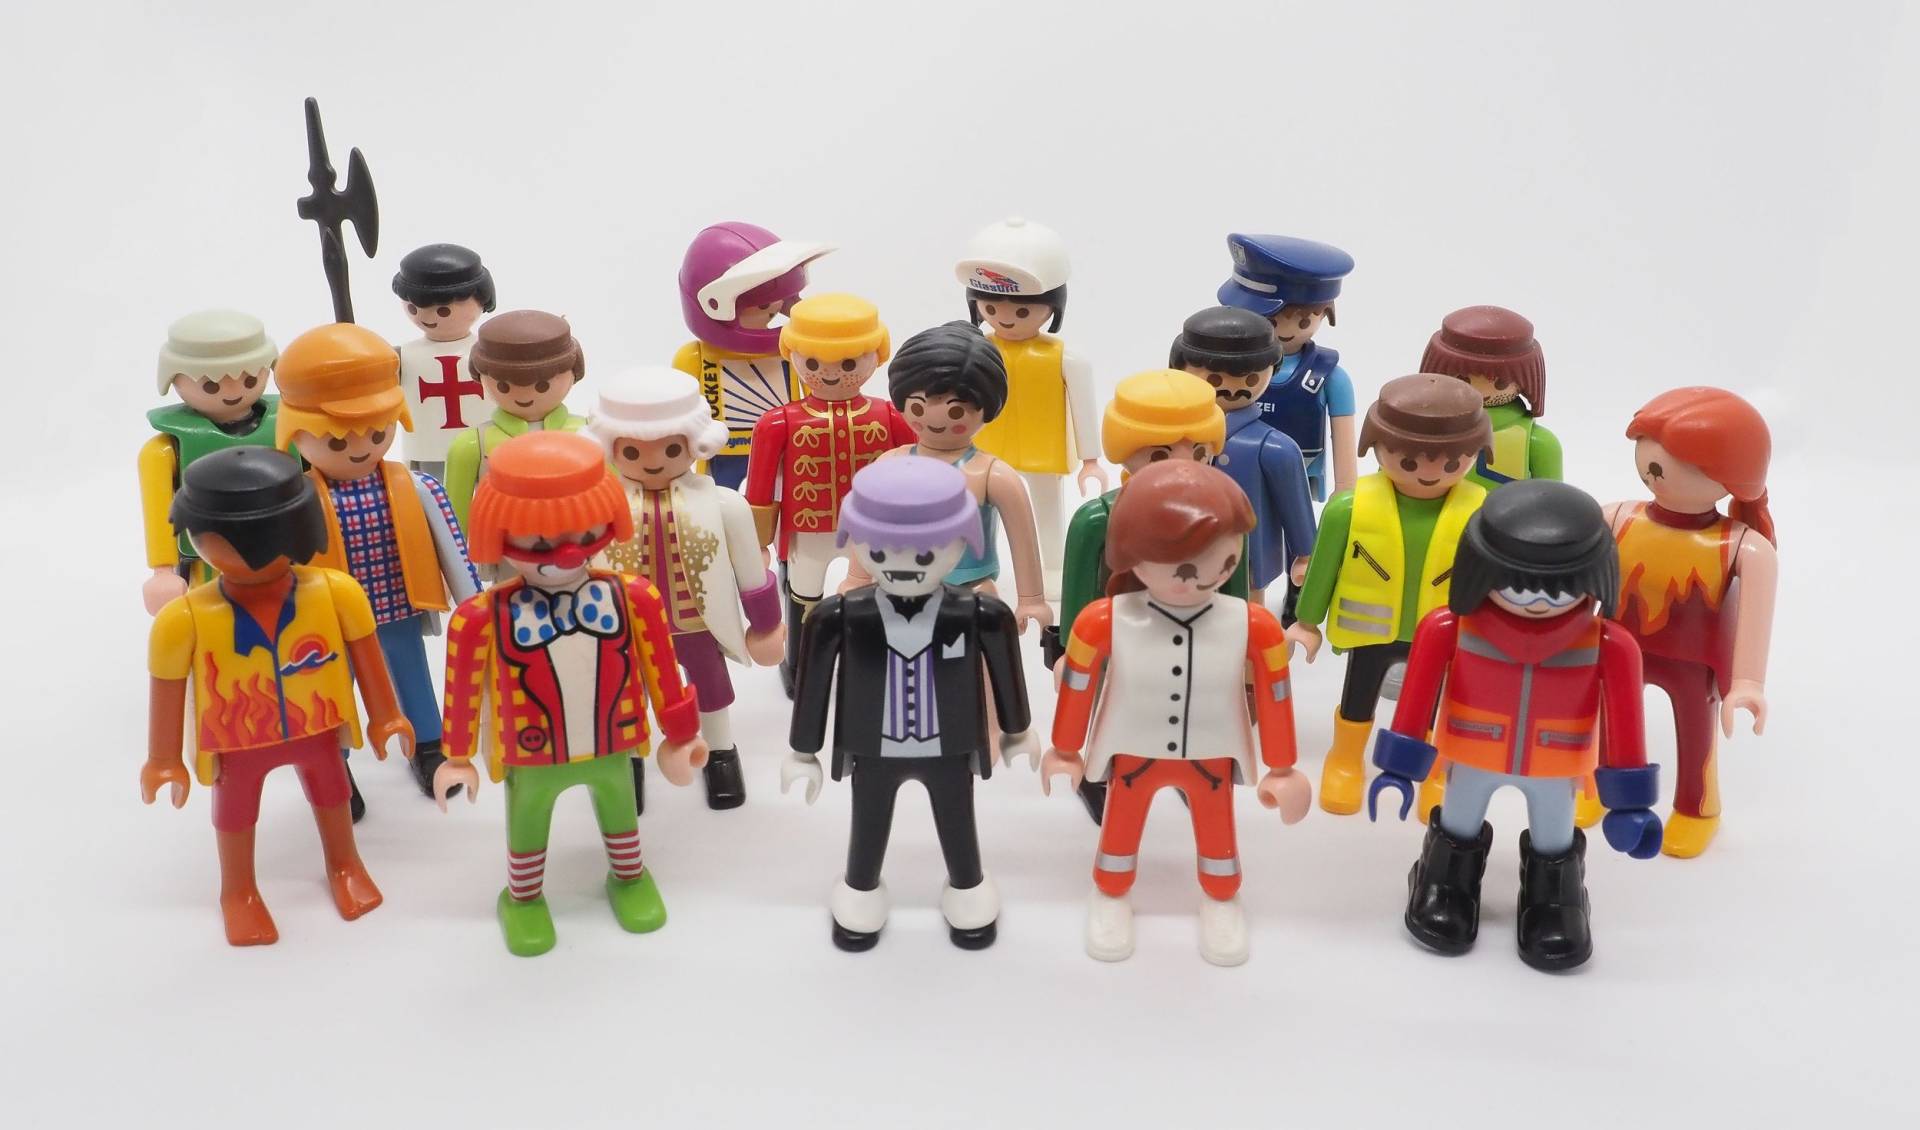 Sammlung: 20 verschiedene Playmobil-Figuren von geobra Brandstätter Stiftung & Co. KG